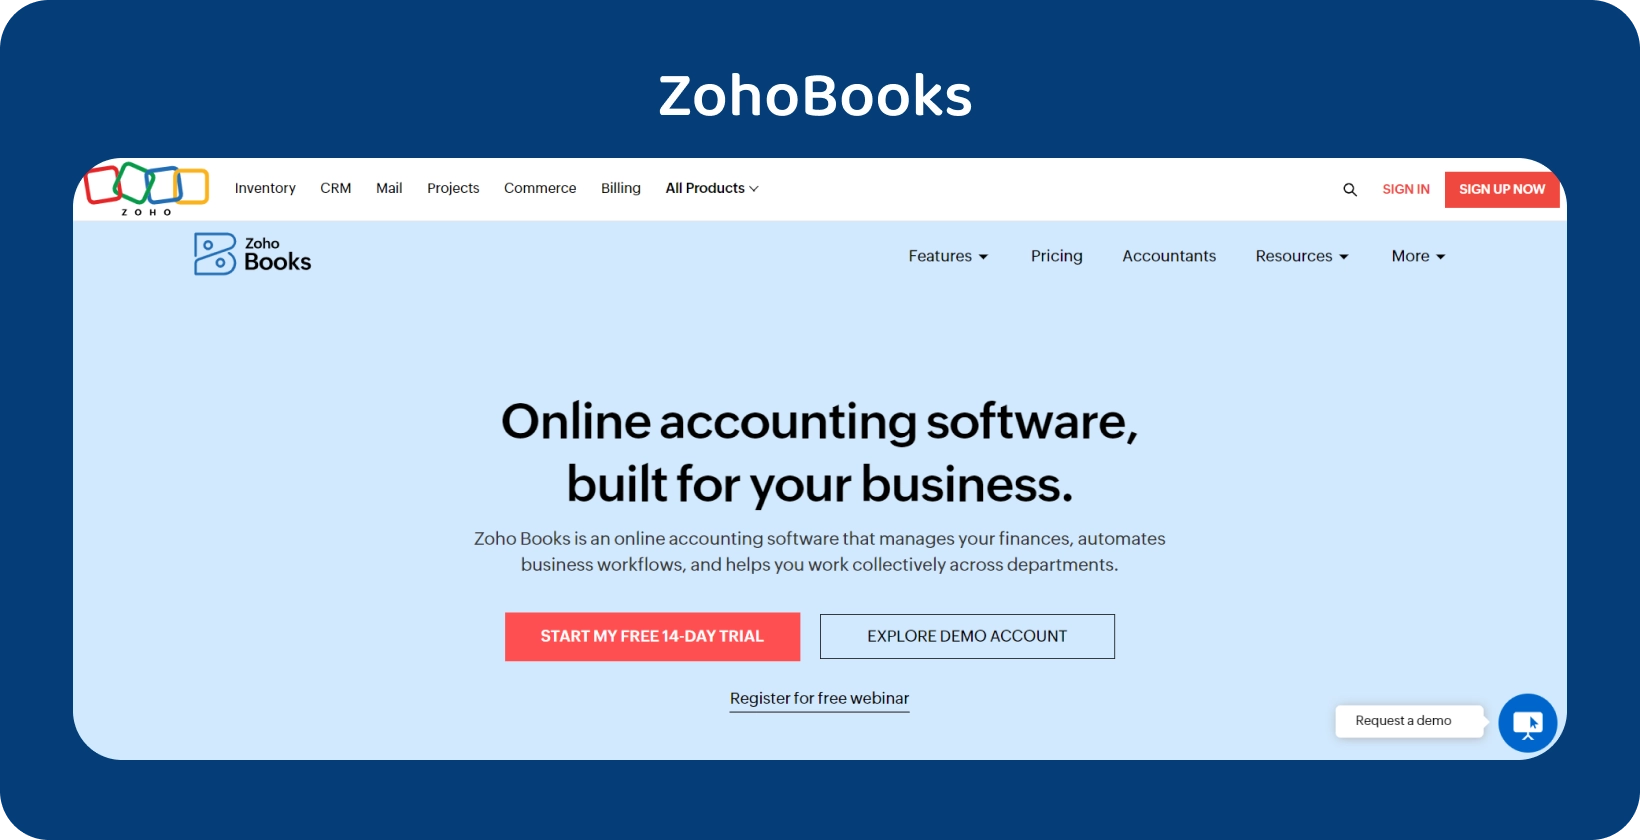 Zoho Books hjemmesidebanner fremhæver sin forretningsskræddersyede online regnskabssoftware til strømlinet drift